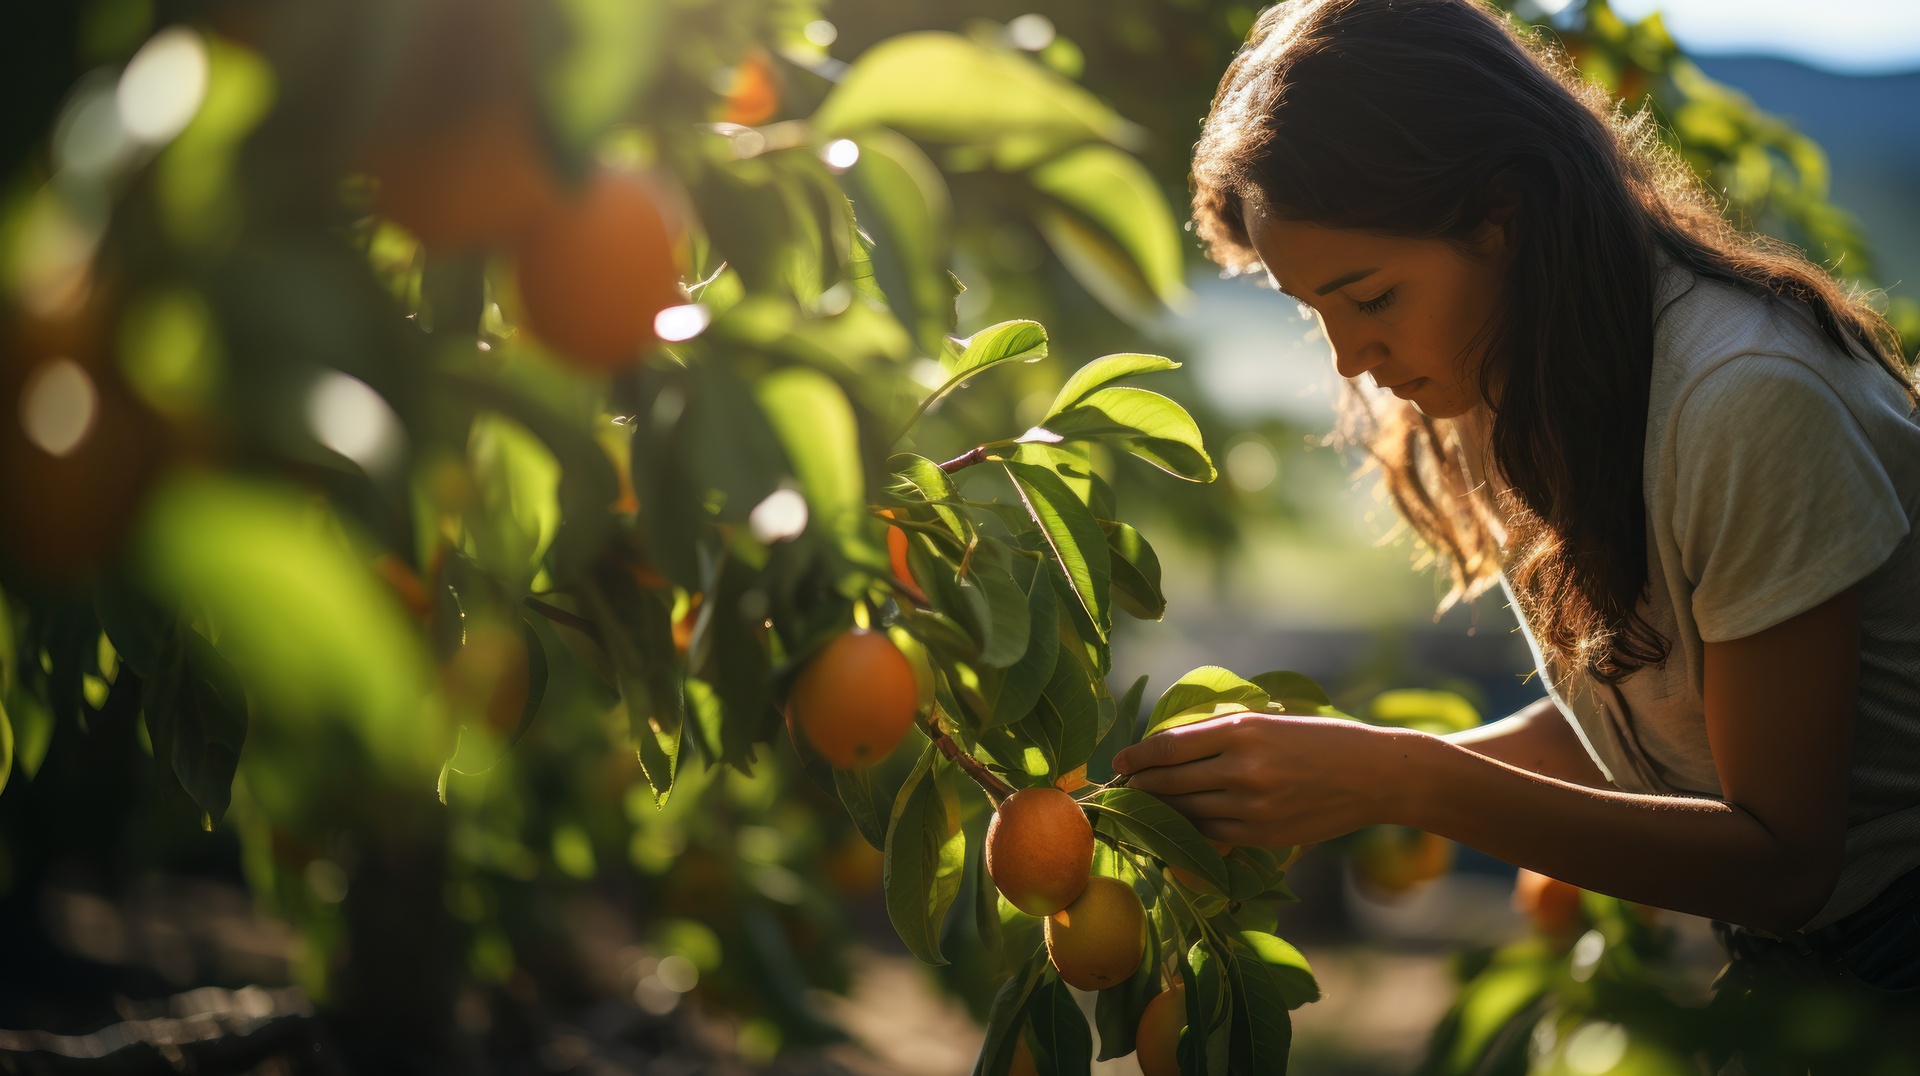 Nastolatka energicznie pracuje na zbiorach owoców, angażując się w pracę